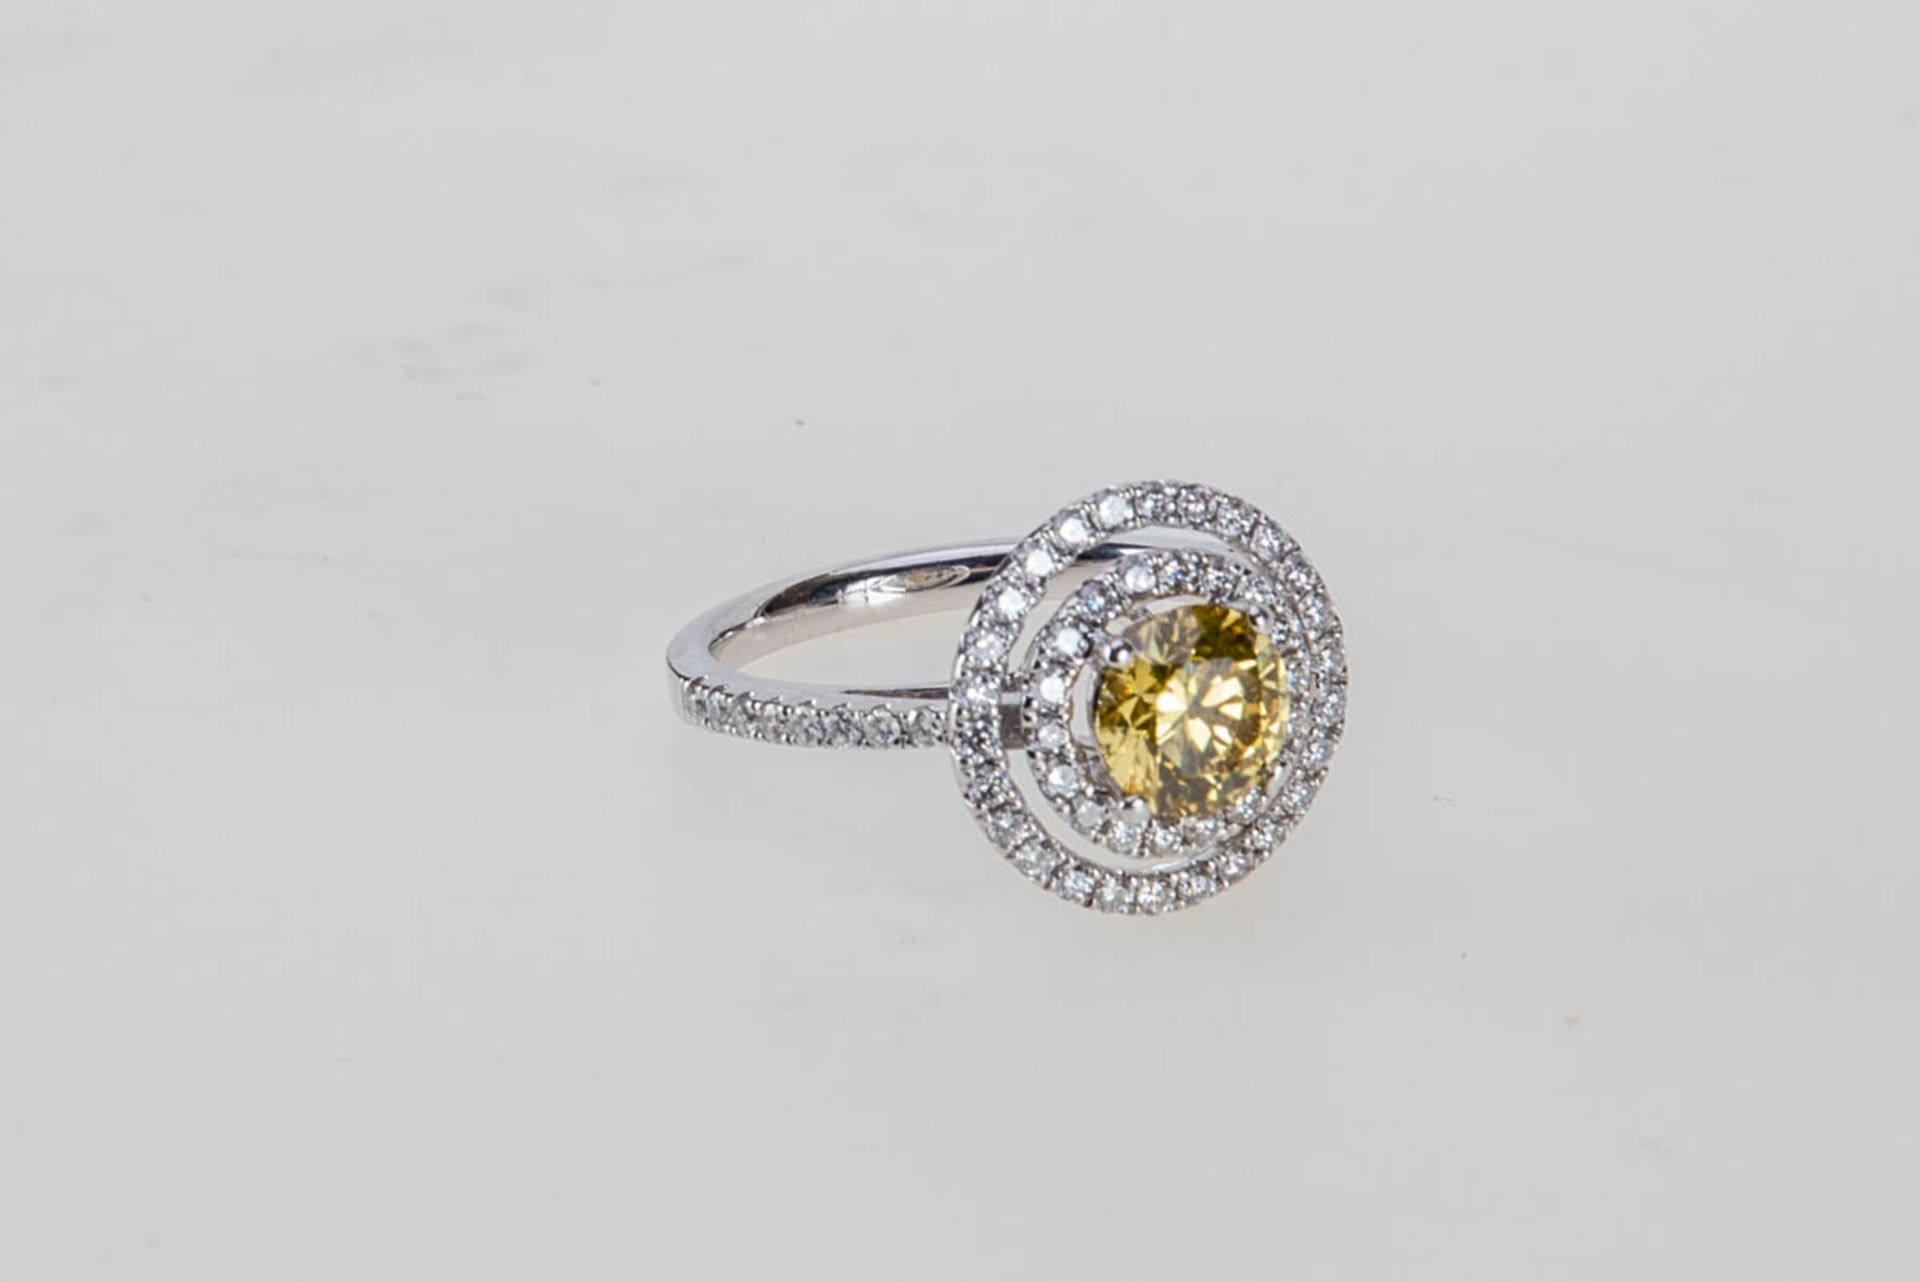 Ring mit Fancy-Brillant750er Weißgold. Glatte Ringschiene, Schulter mit kleinen Brillanten